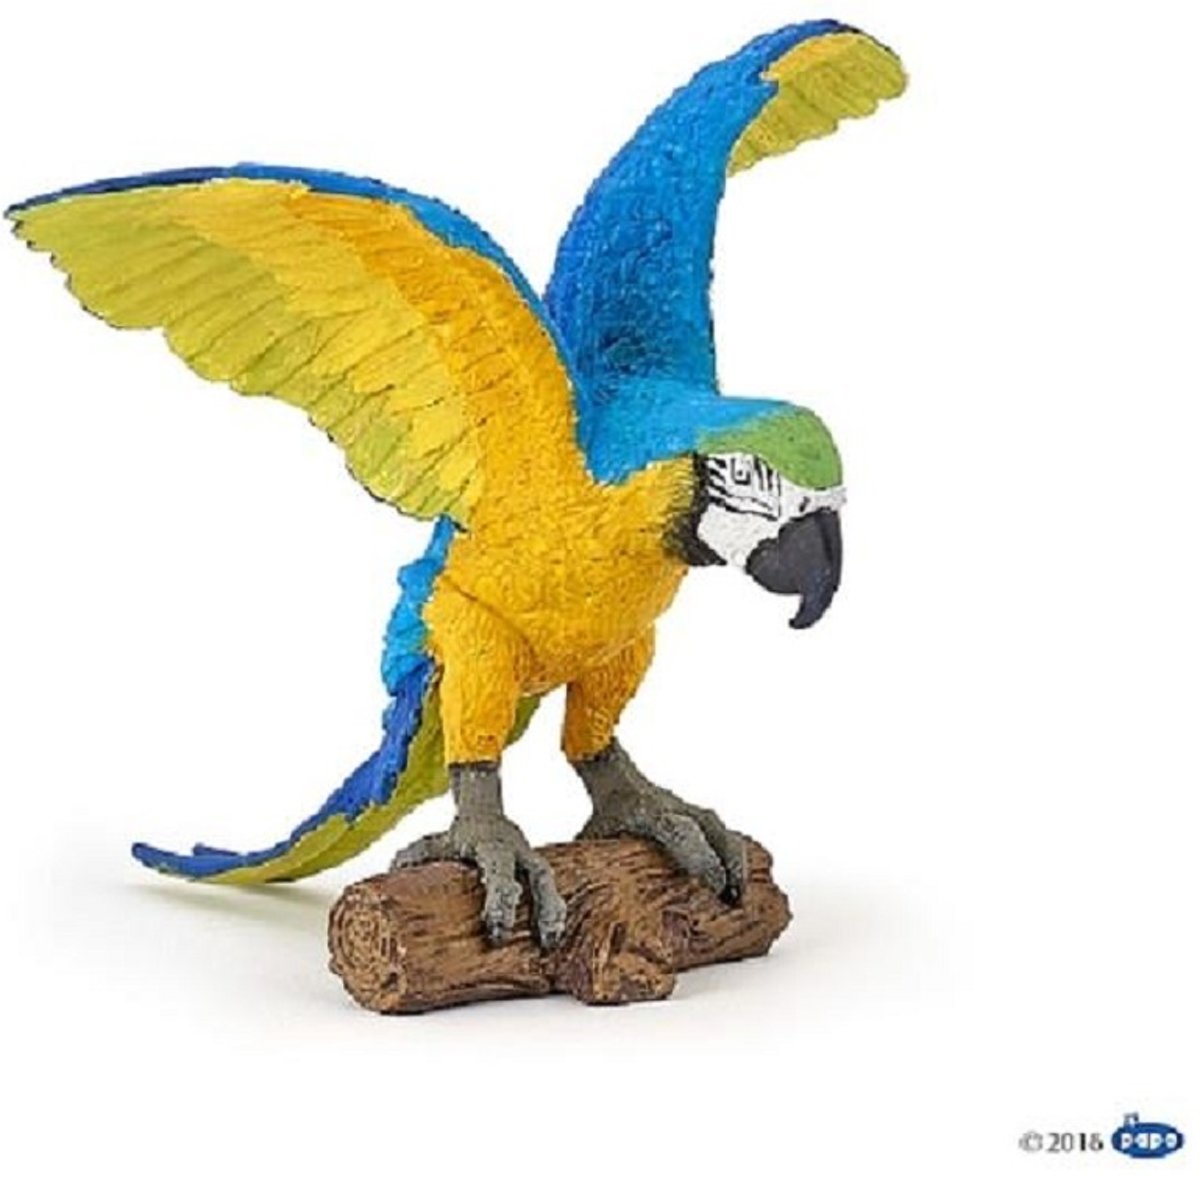 Papo Blue Ara Parrot